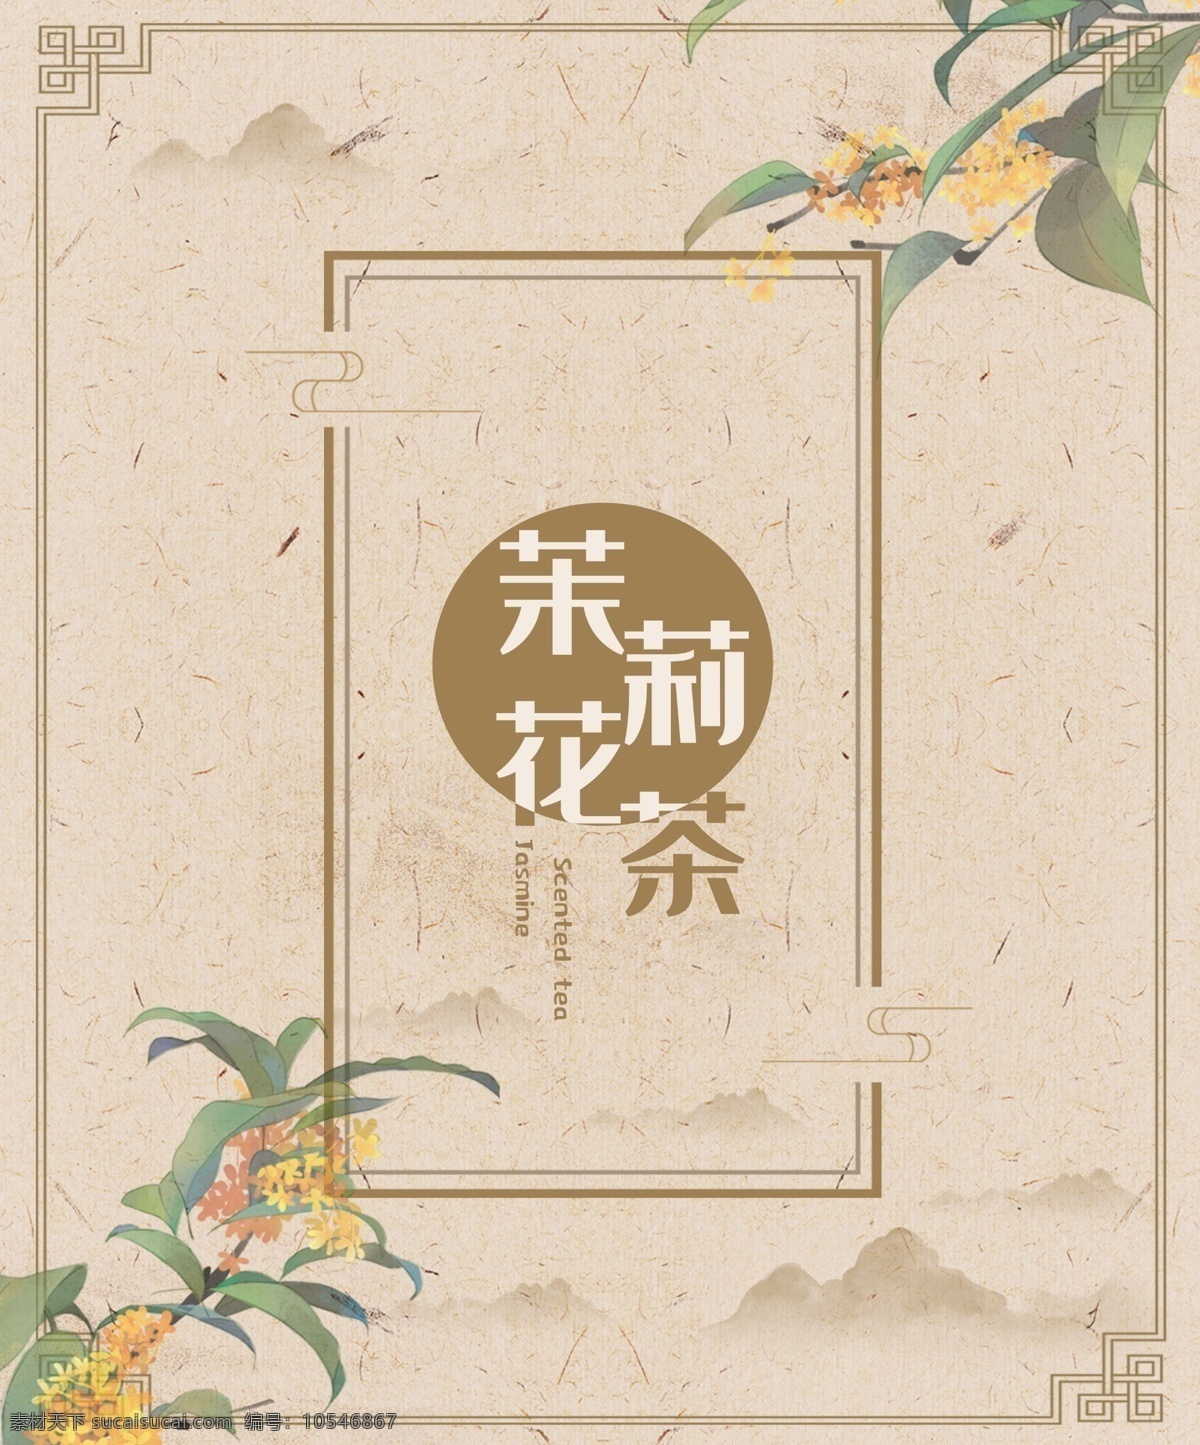 茉莉花茶 产品 包装盒 中国 风 复古 包装 茉莉 茶 产品包装 中国风 高端大气 礼品盒 品味 包装设计